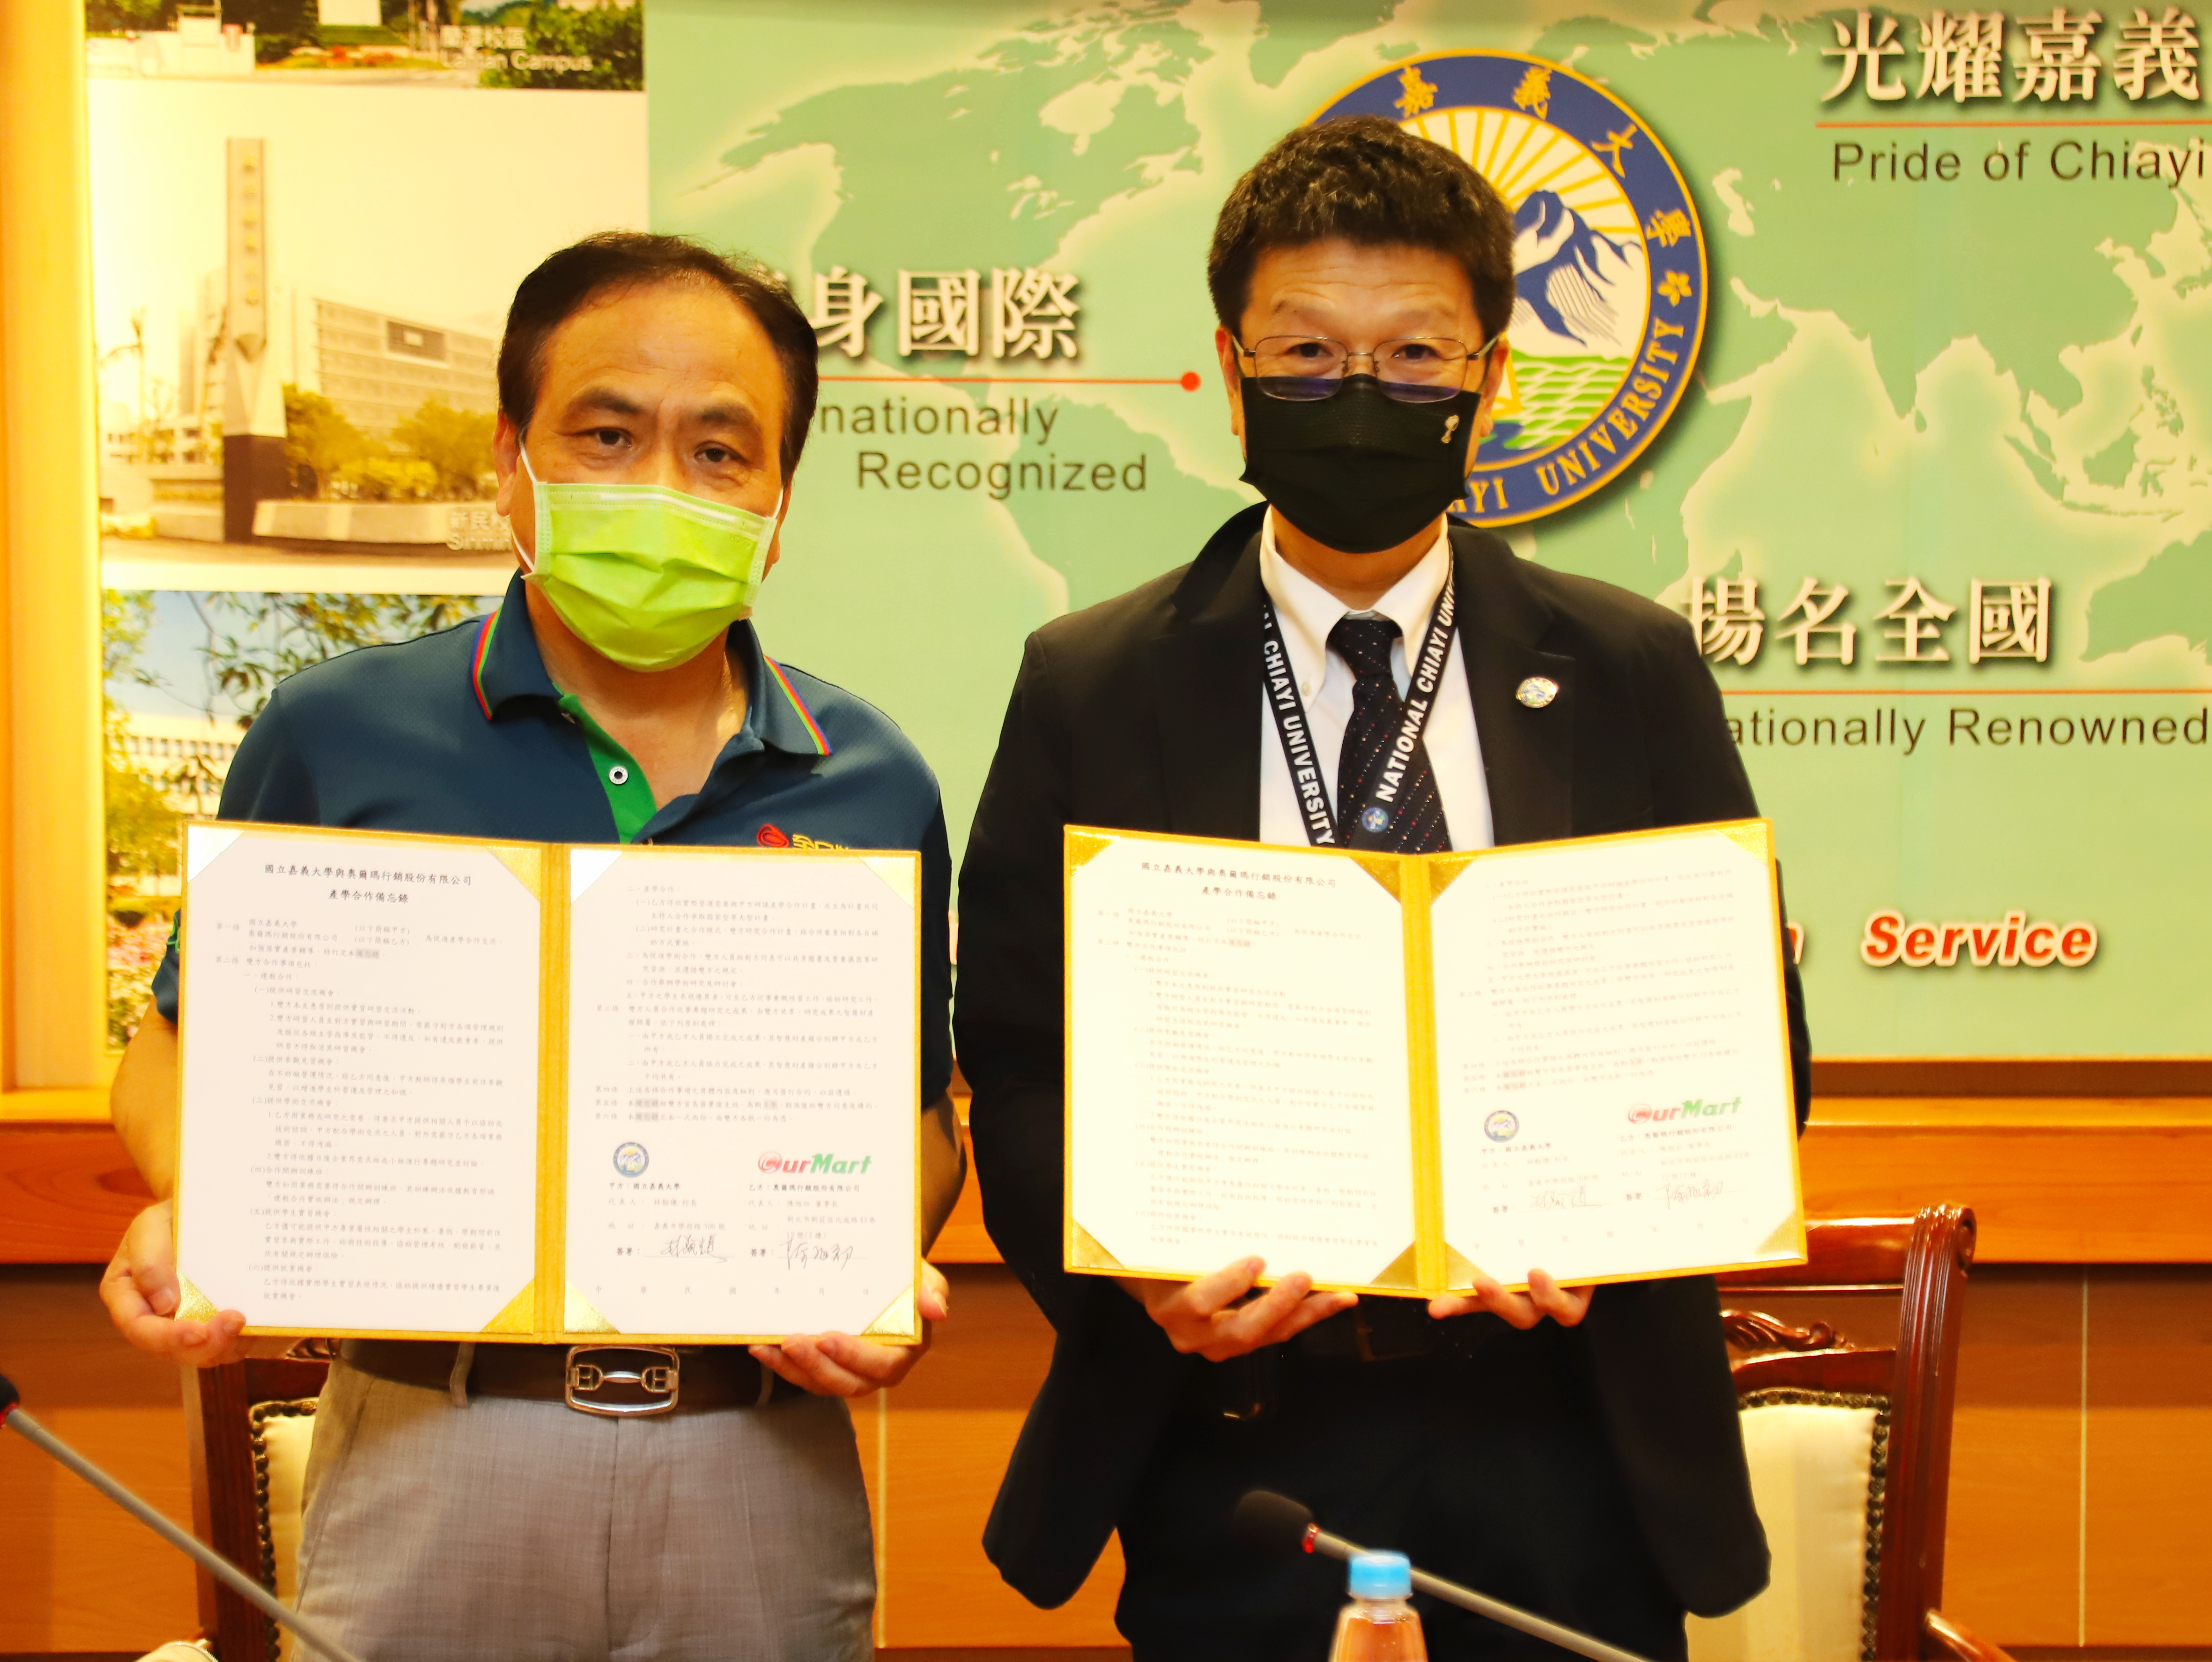 嘉大林翰謙校長(右)與全日物流集團由陳旭初董事長(左)簽署合作備忘錄合影。